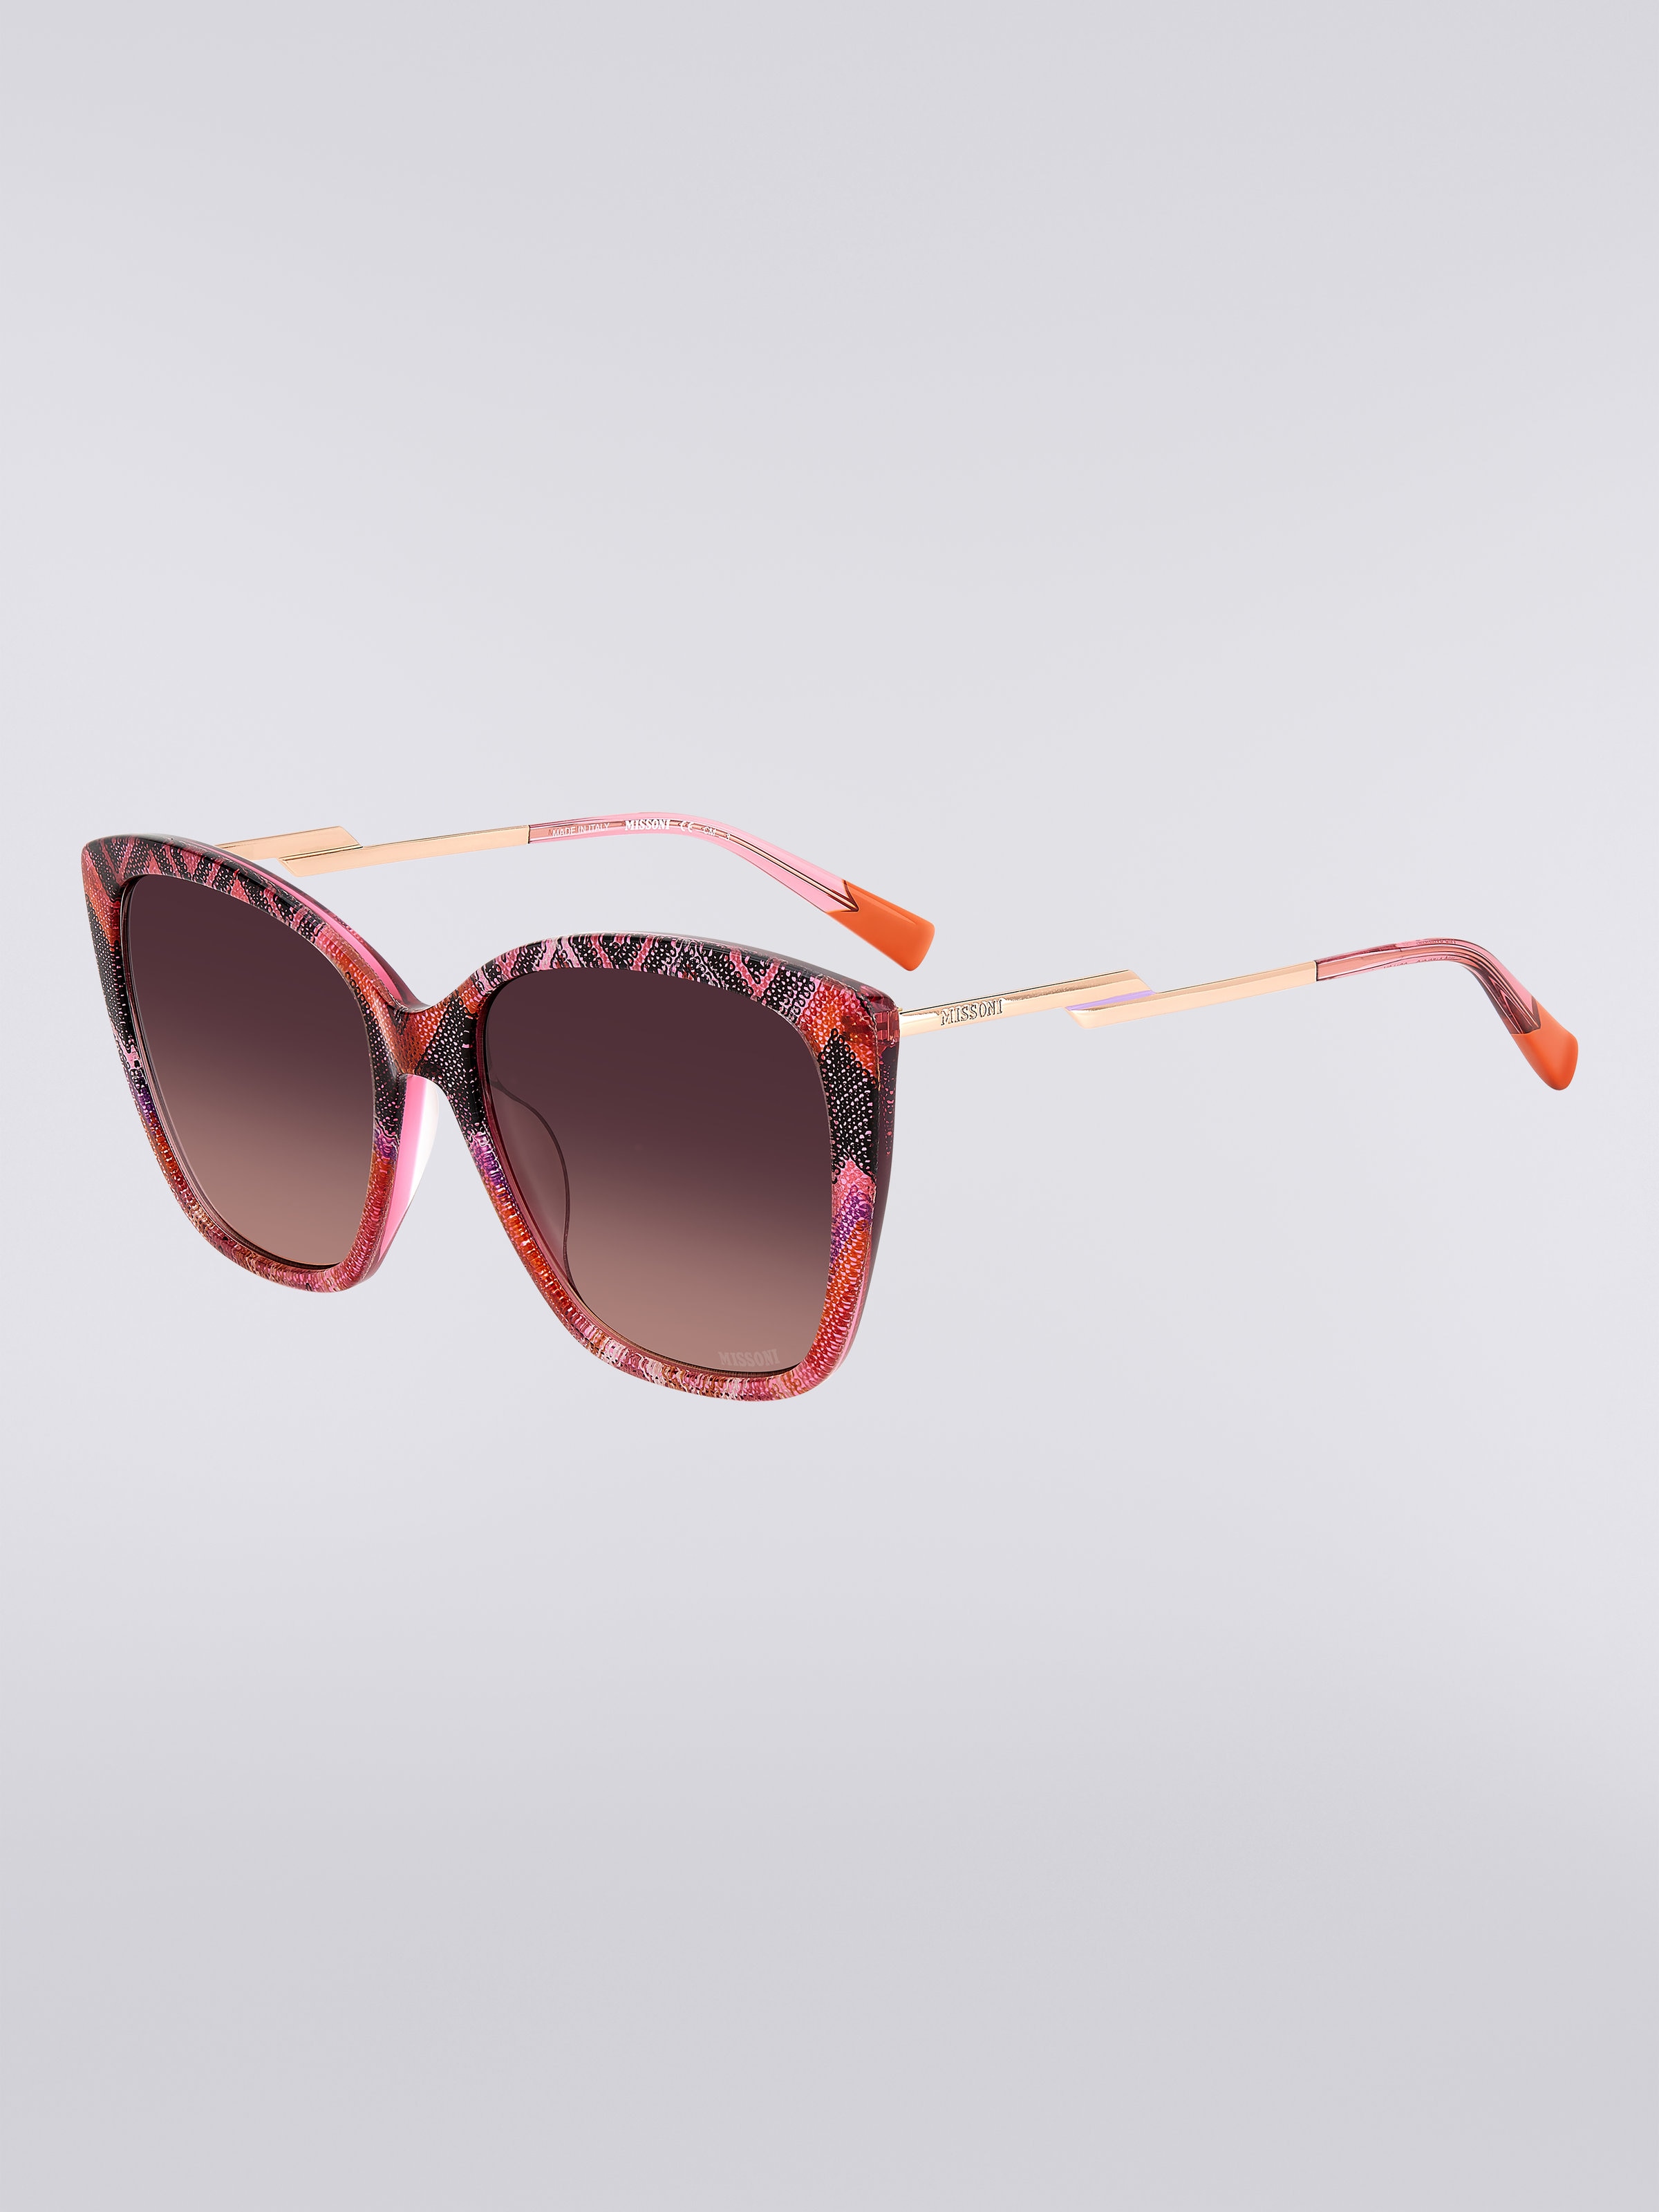 Missoni Dna Acetate Sunglasses, Multicoloured  - 1